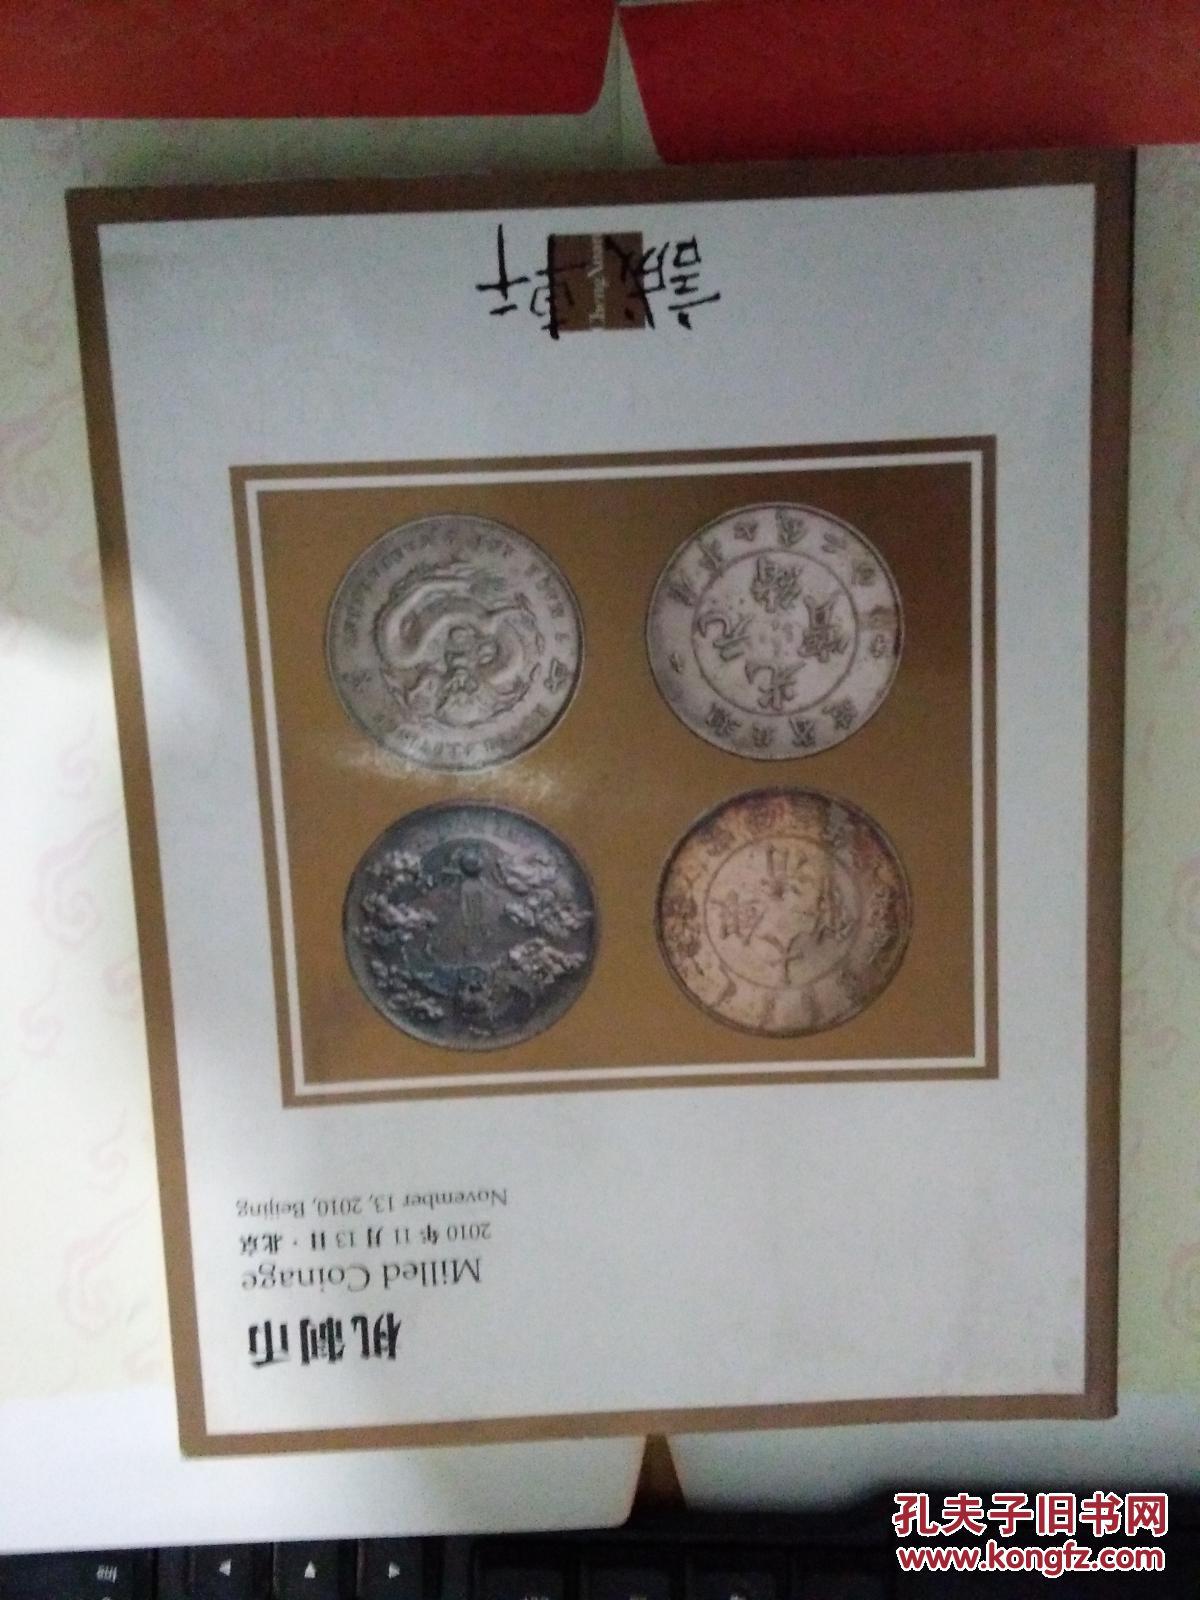 北京诚轩 2010年秋季拍卖会 机制币